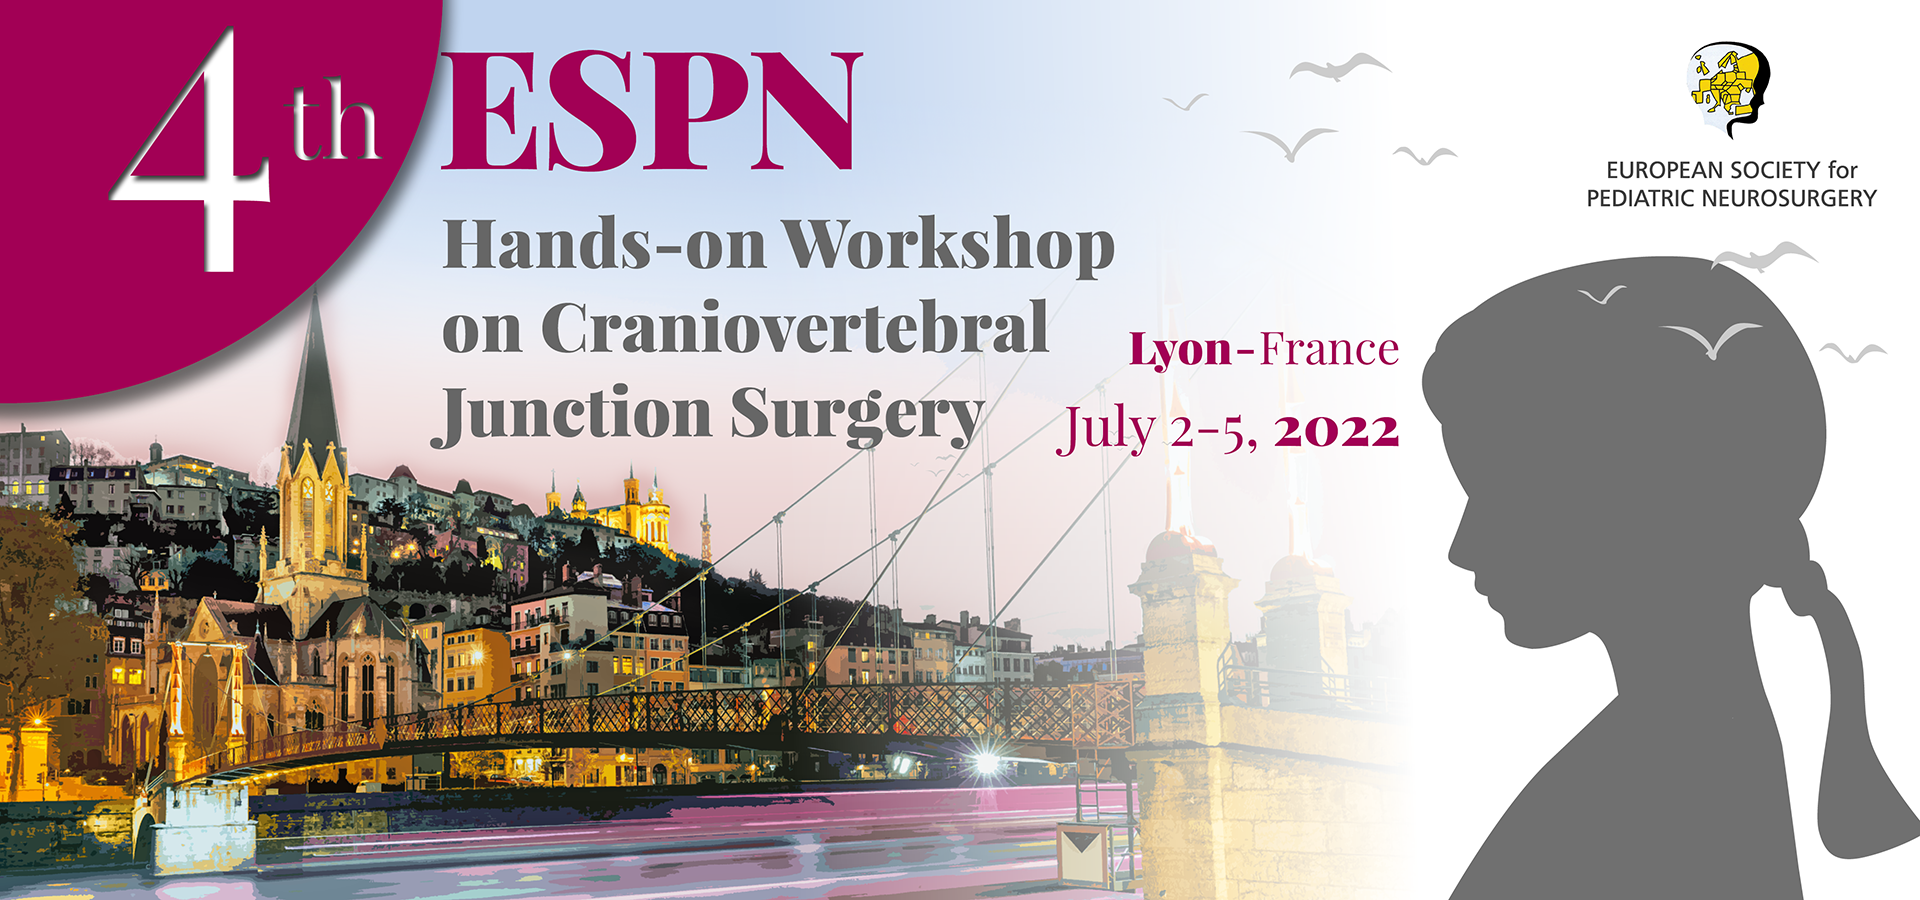 4th ESPN Hands-on Workshop on Craniovertebral Junction Surgery | July 2-5, 2022 | Lyon, France